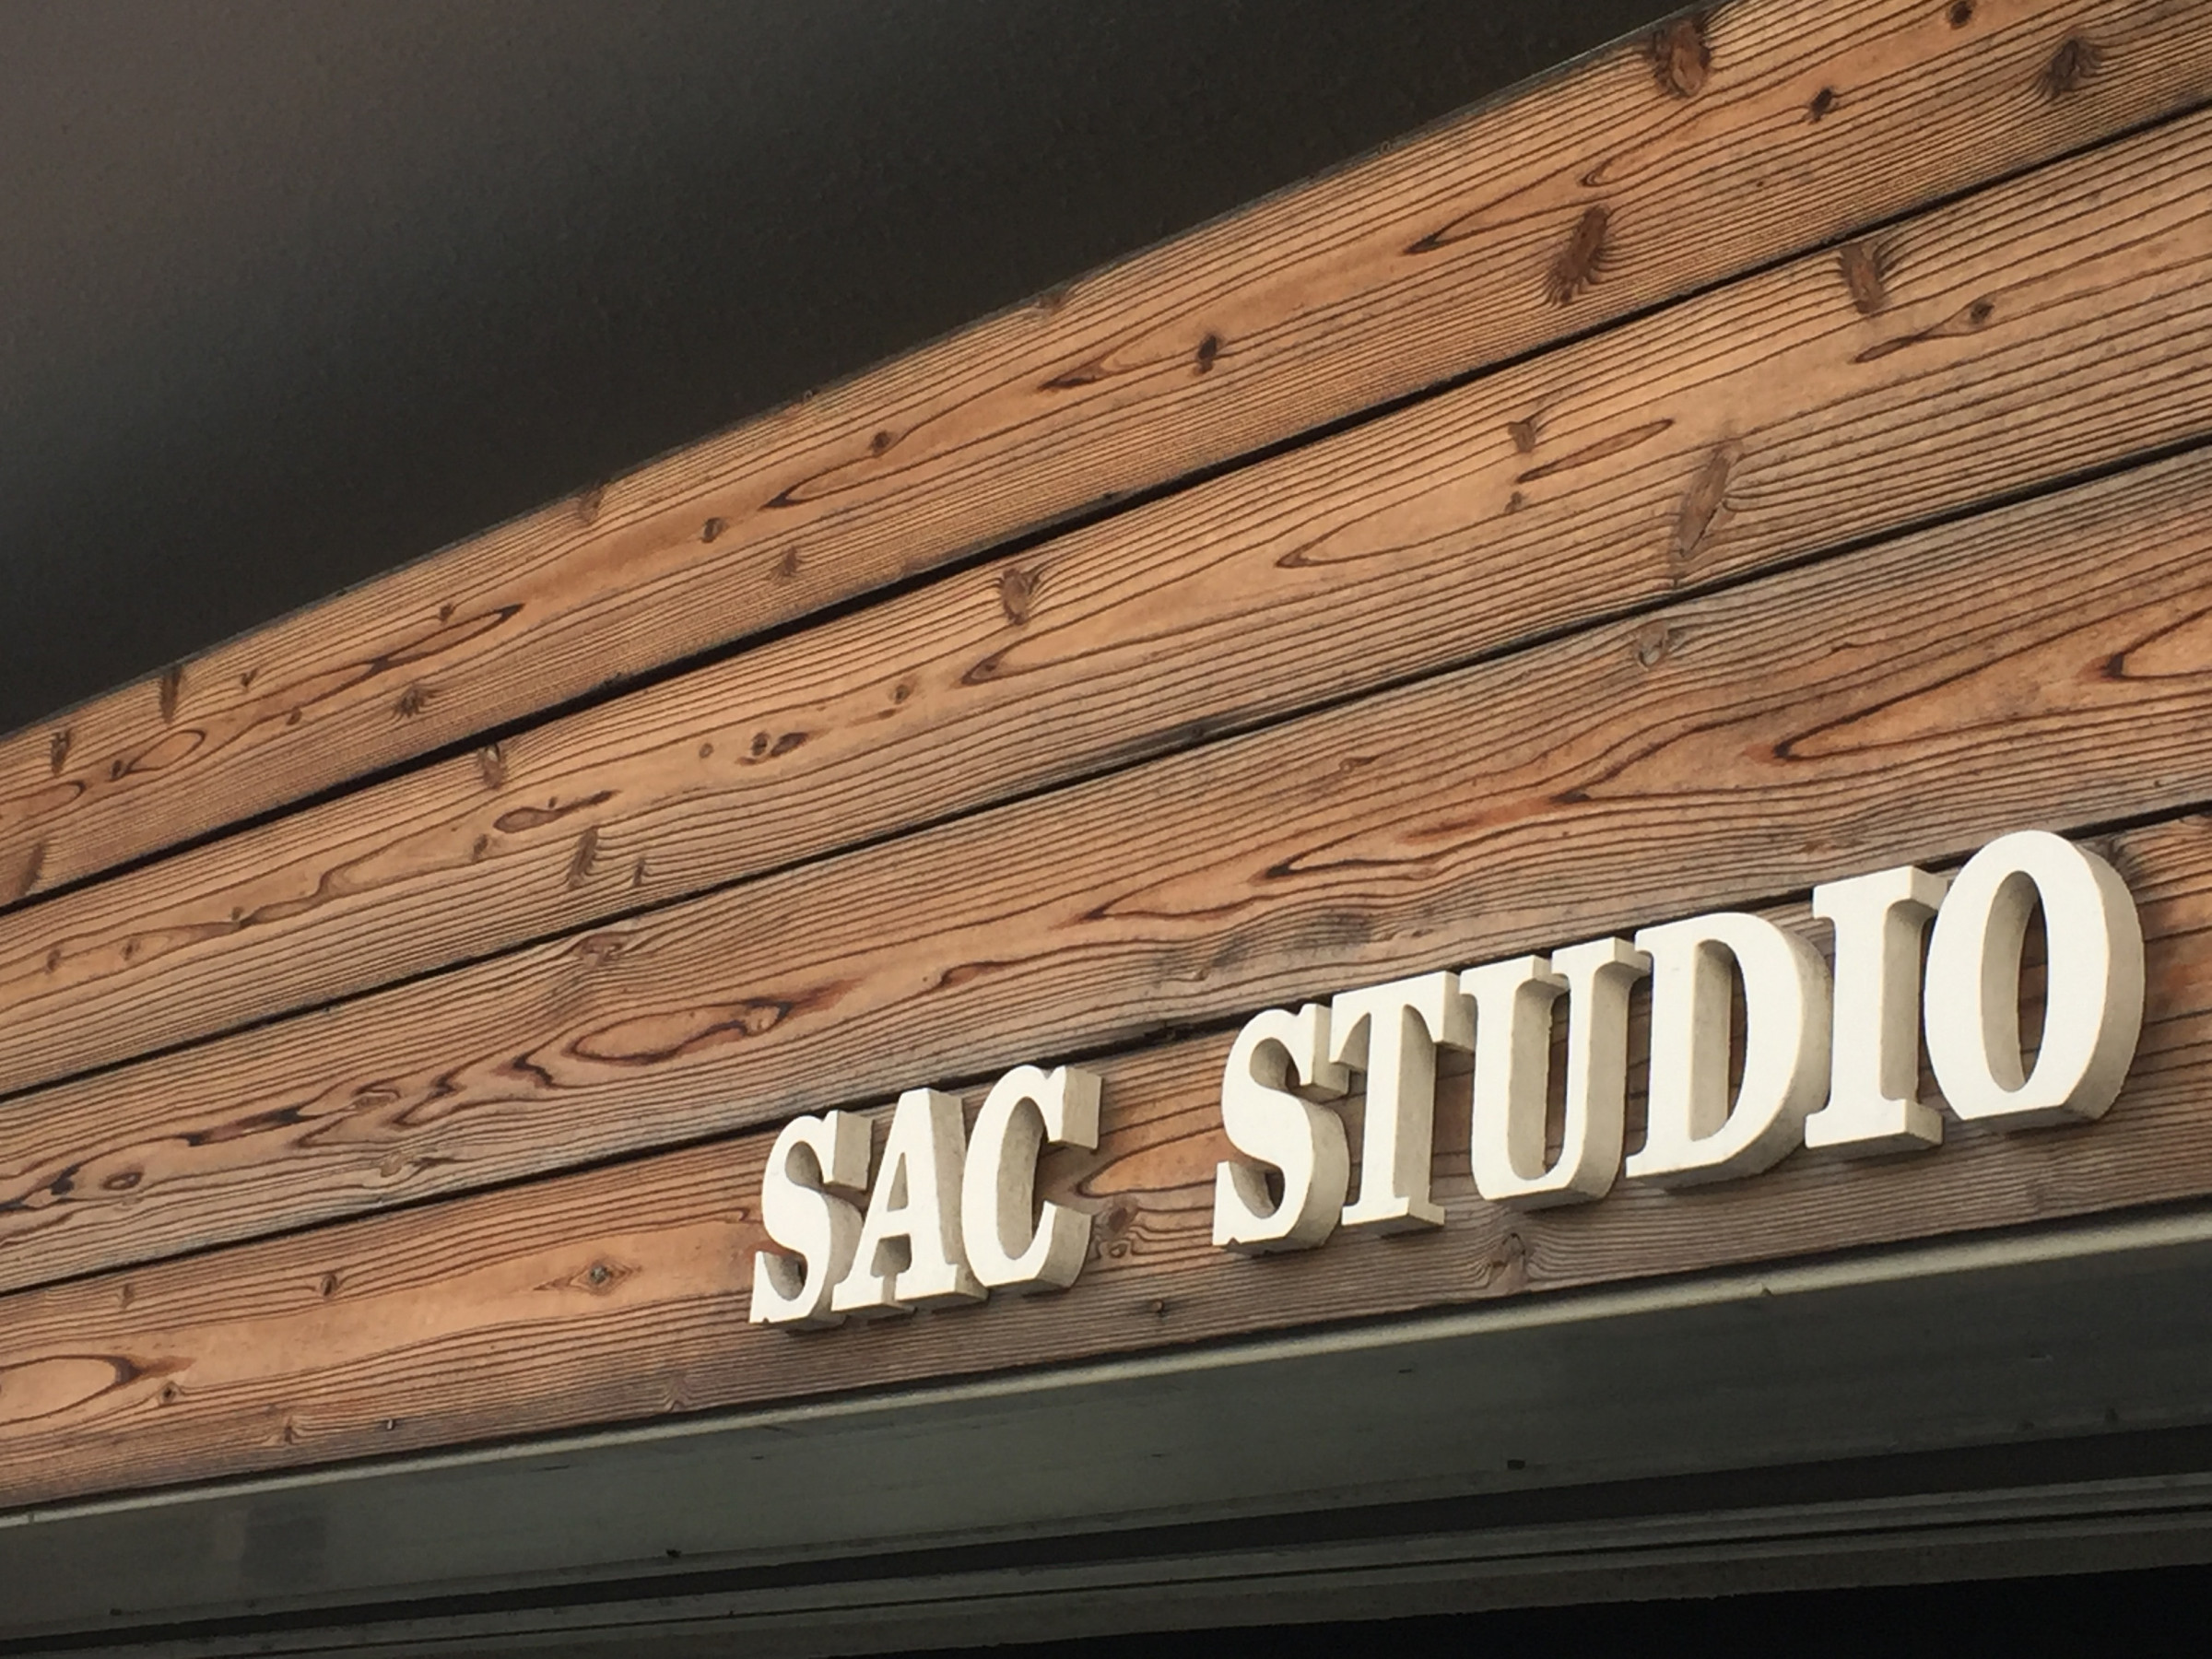 SAC Studio